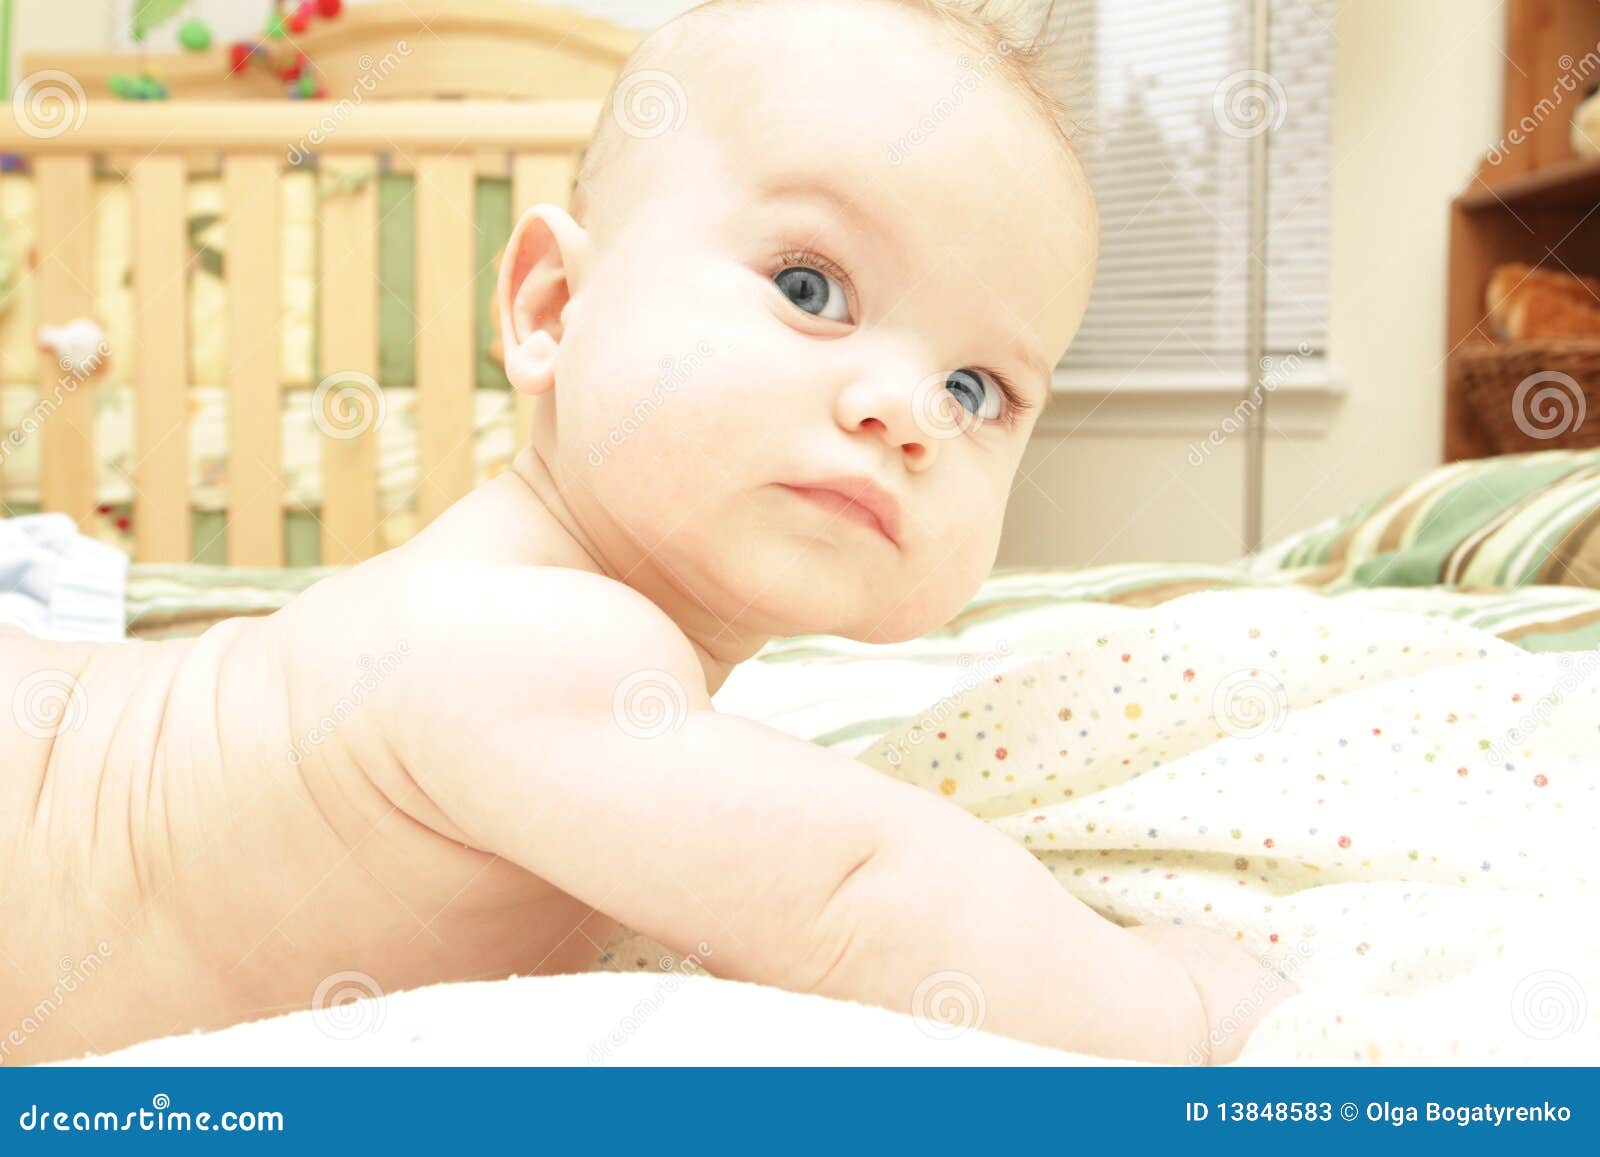 El bebé de cinco meses está acostado sobre una manta ligera en el  dormitorio vista superior de un niño encantador